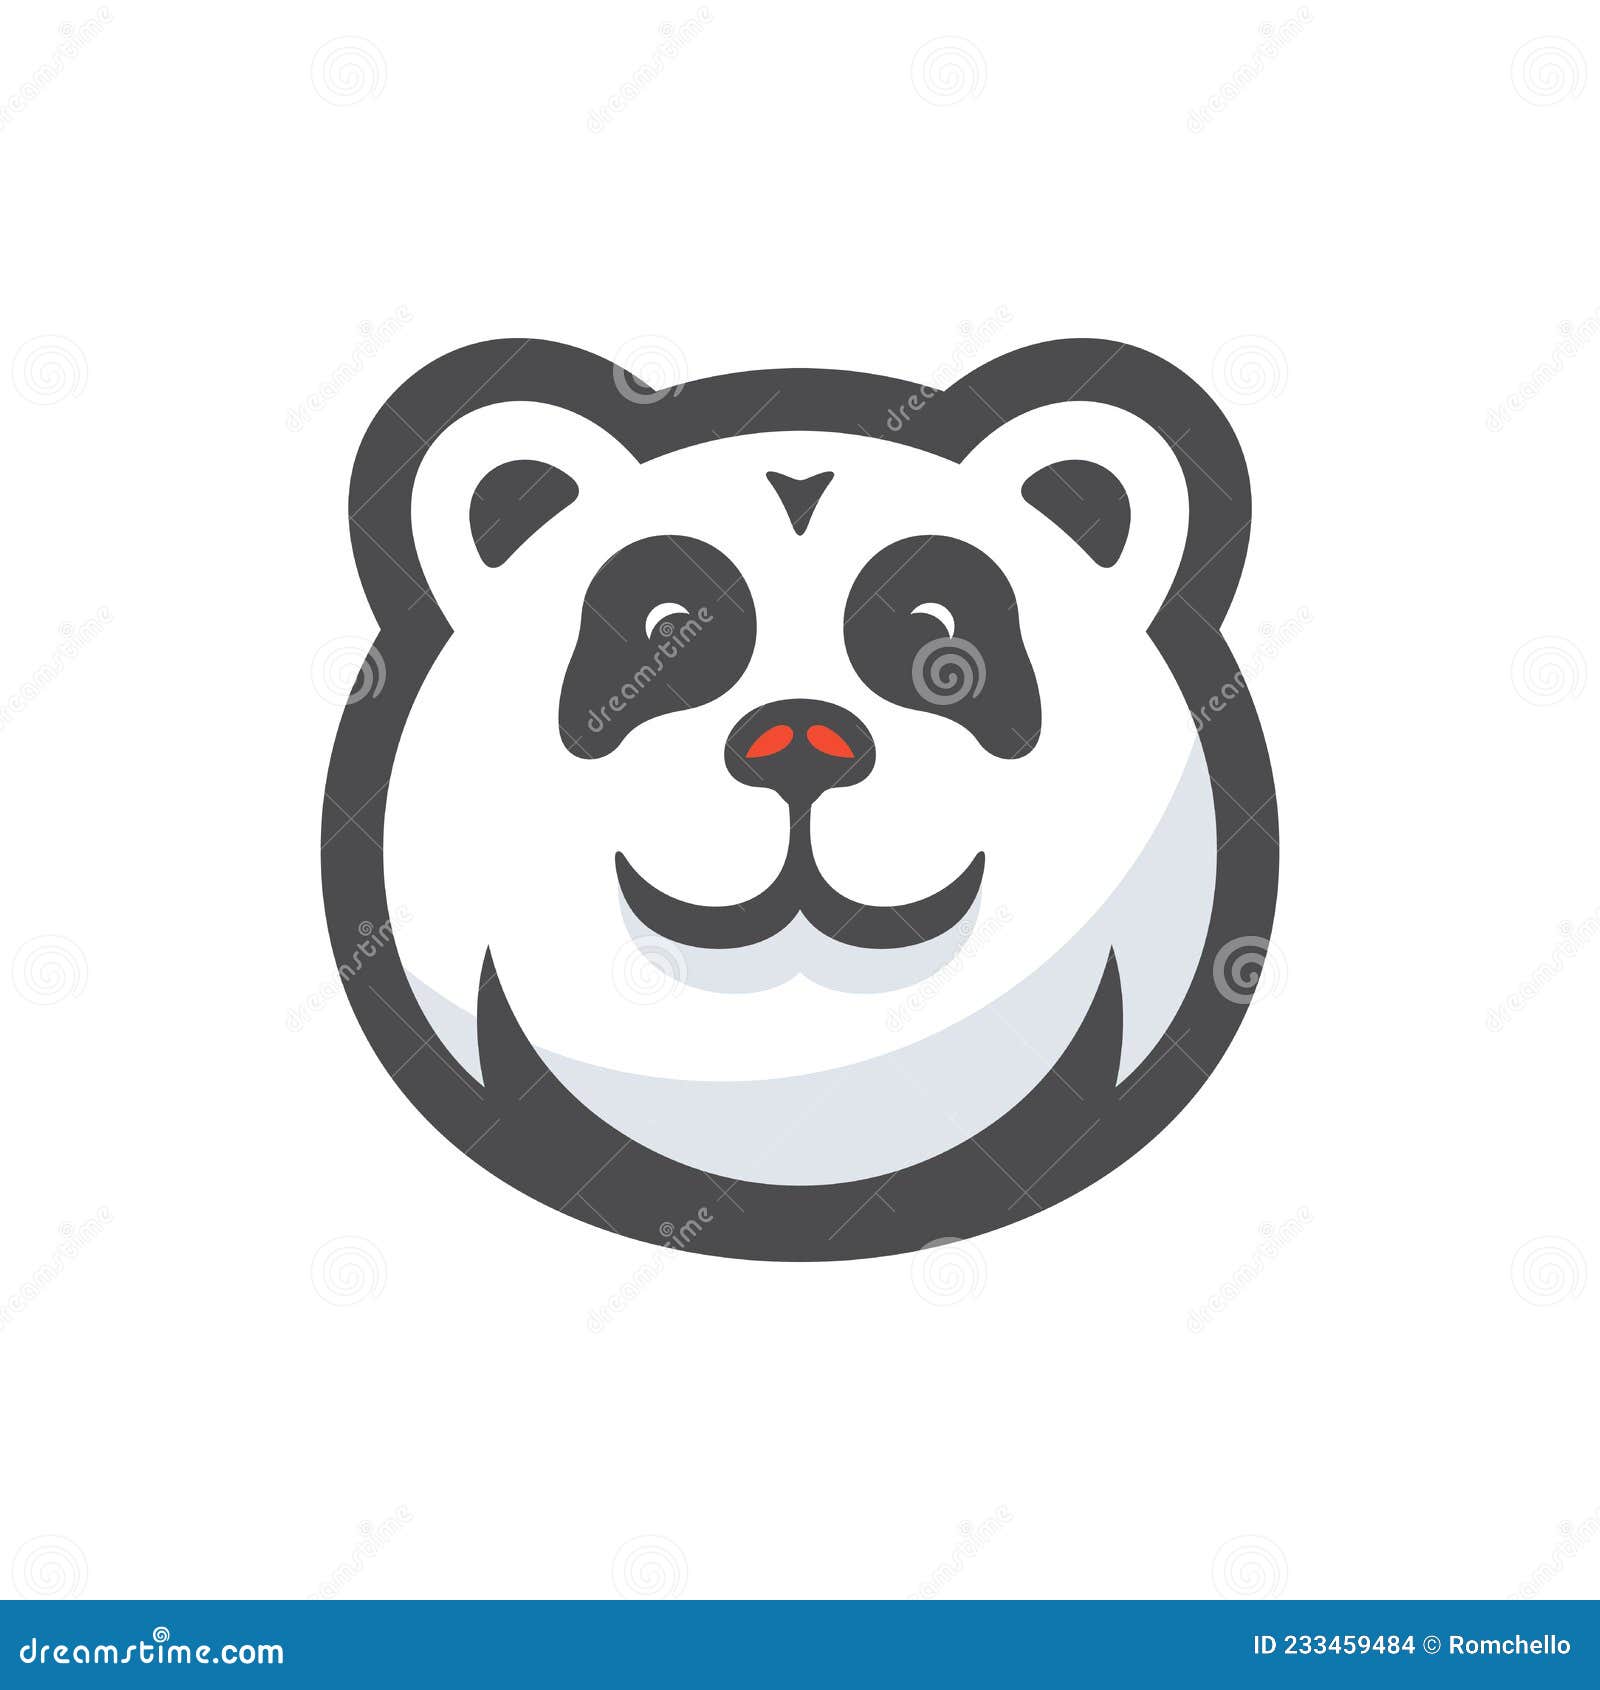 Um panda de desenho animado com um rosto branco e um rosto preto e branco.